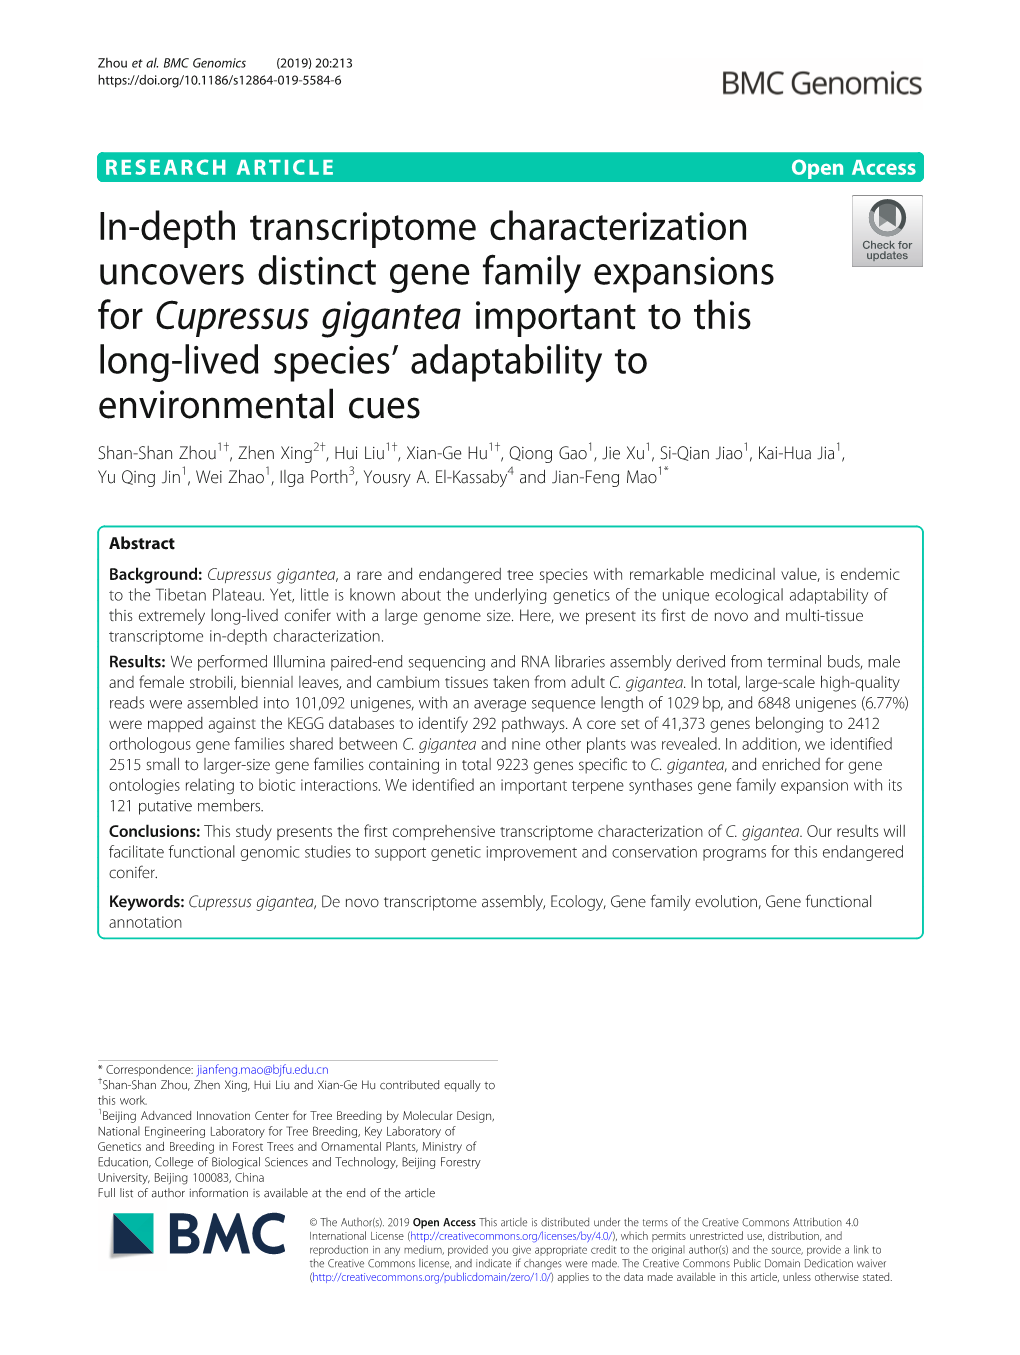 In-Depth Transcriptome Characterization Uncovers Distinct